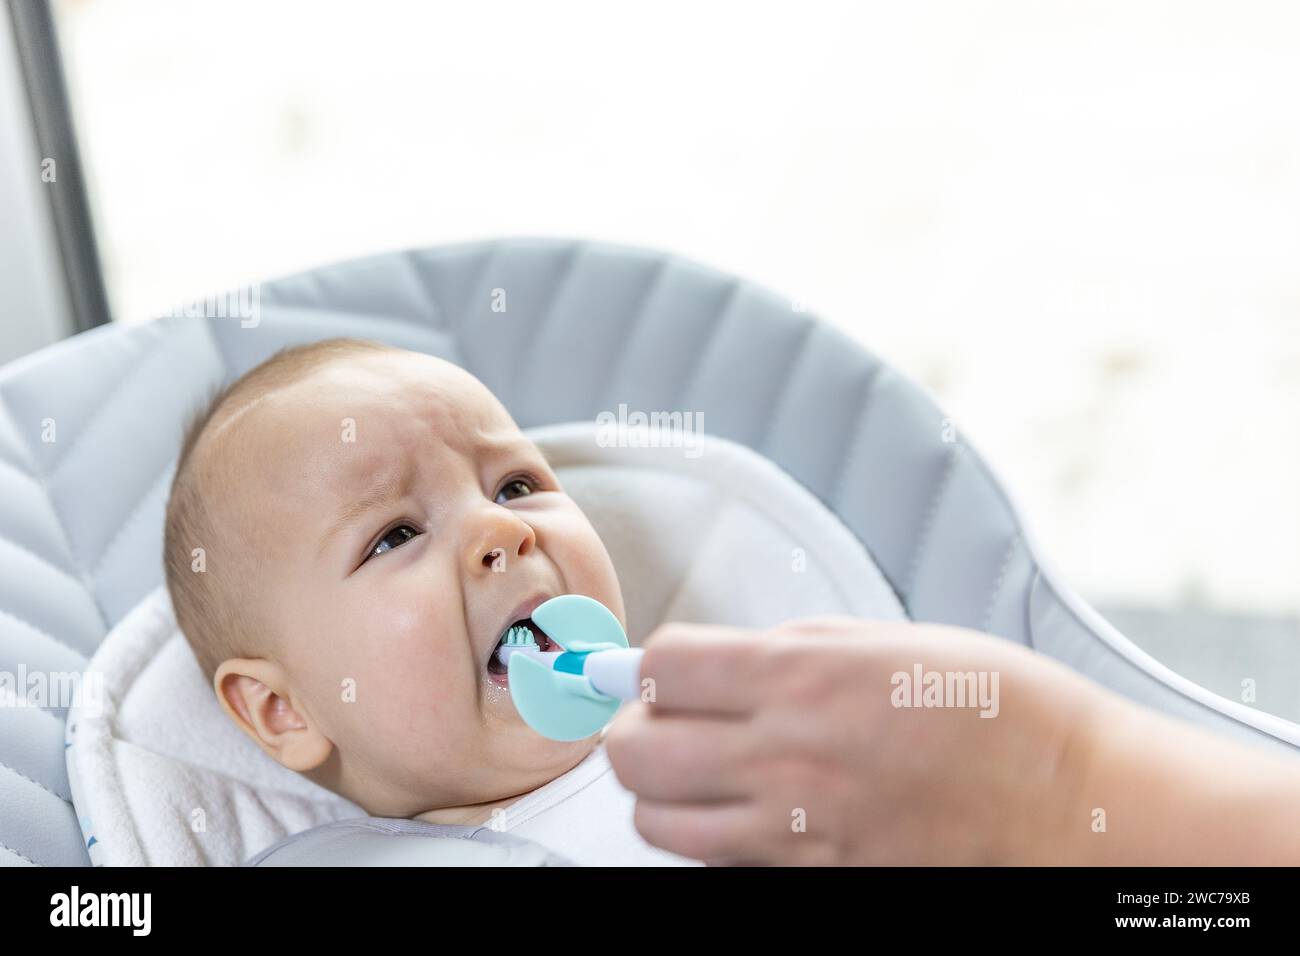 Nouveau-né souffrant de la croissance de ses dents, maman utilisant un anneau de dentition pour soulager la douleur, concept de soins de santé Banque D'Images